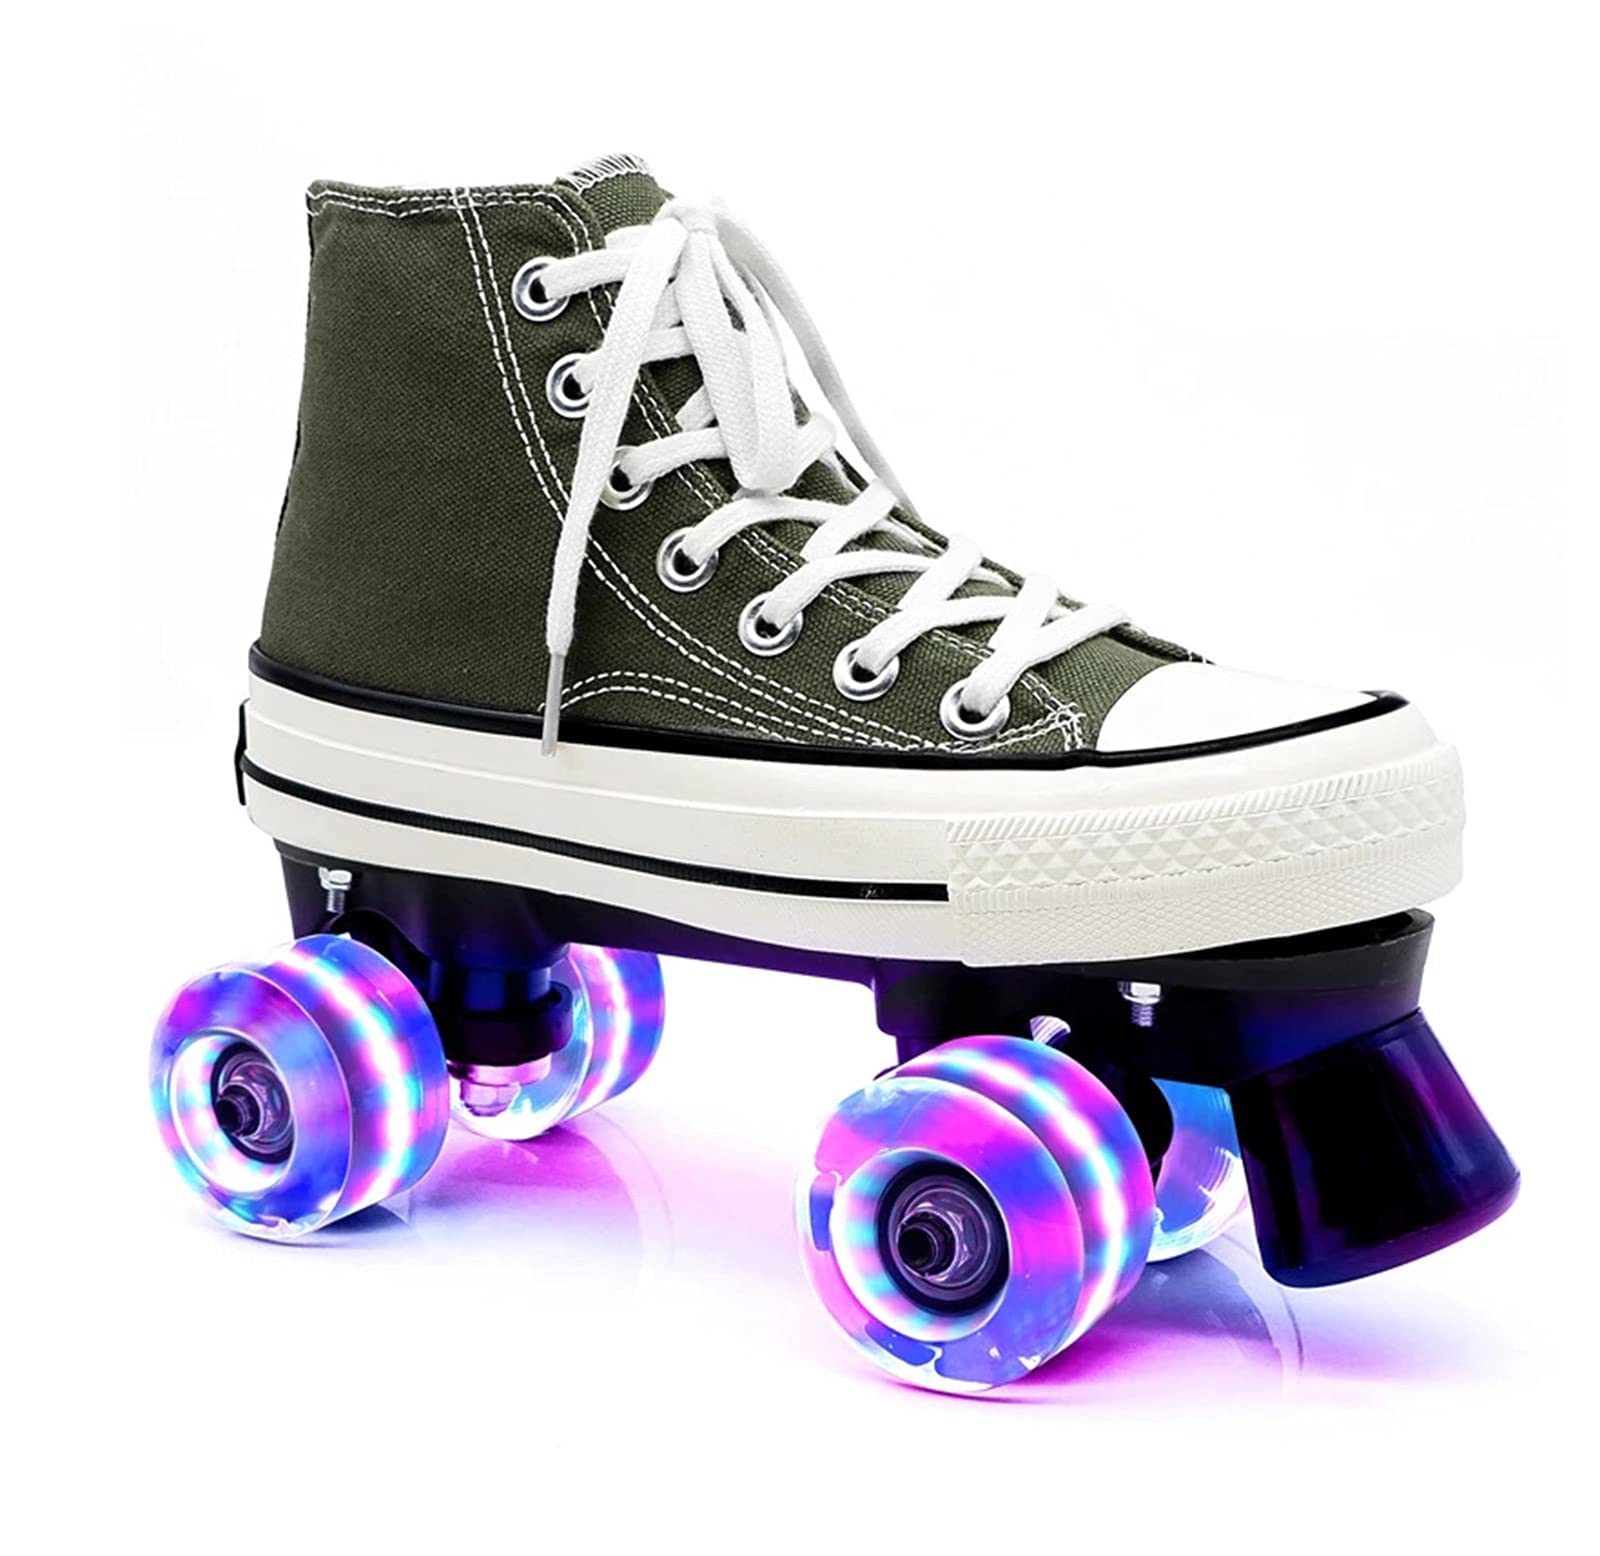 Rollschuhe für Damen und Herren, Discoroller Erwachsene komfortable LED Rollerskates Quad Skating Outdoor für Mädchen und Jungen,Grün,43 WOERD